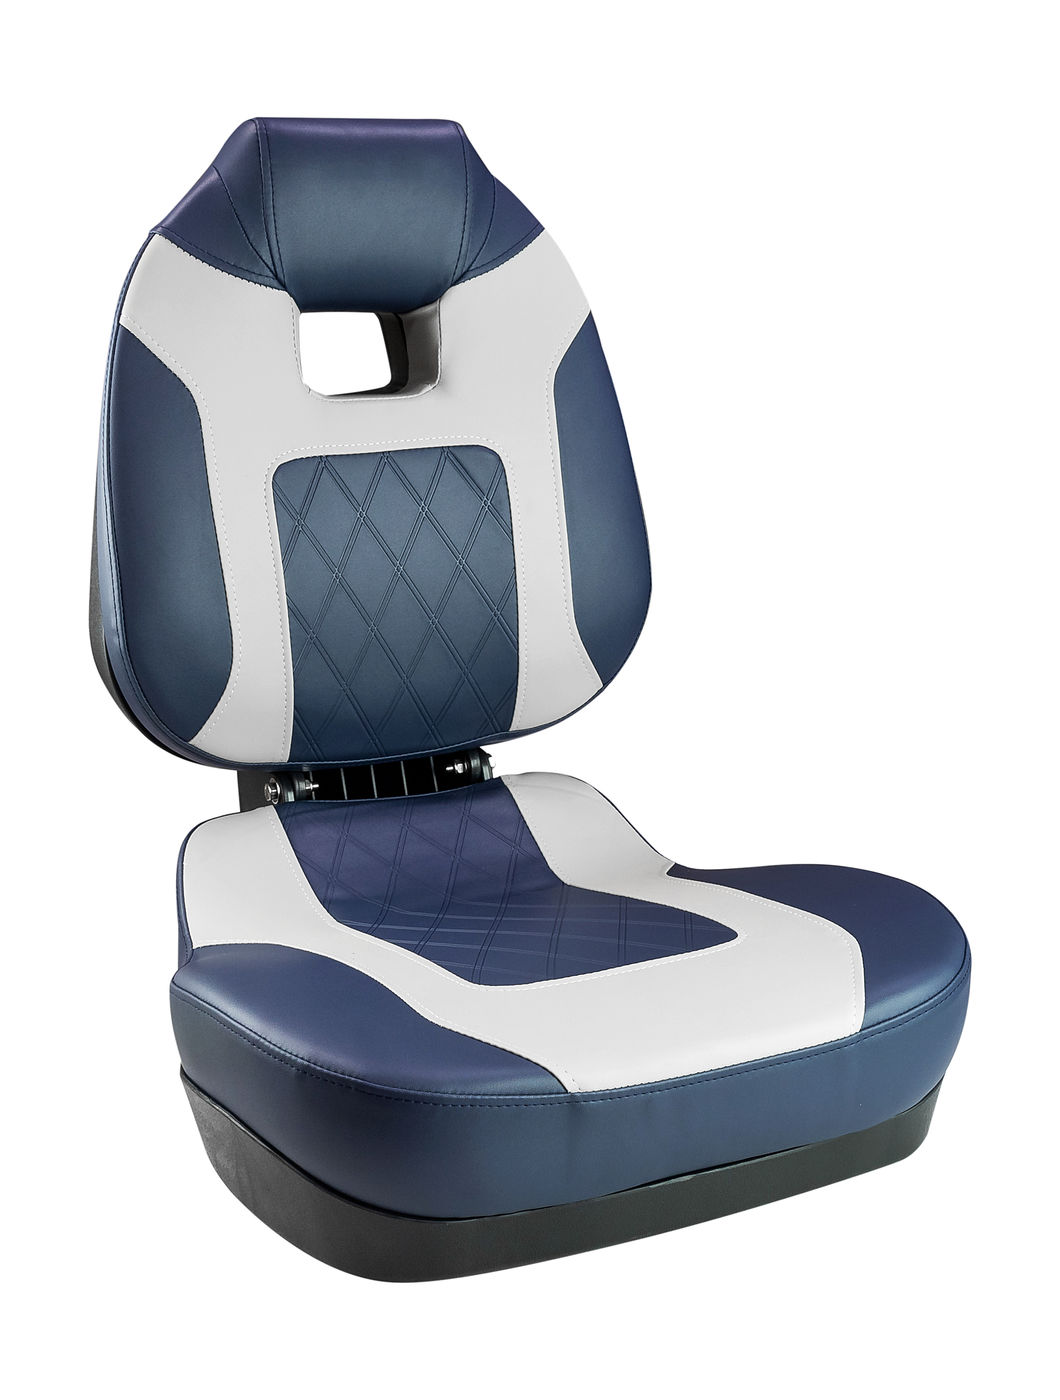 Кресло складное мягкое FISH PRO II с высокой спинкой, цвет синий/серый Springfield 1041419